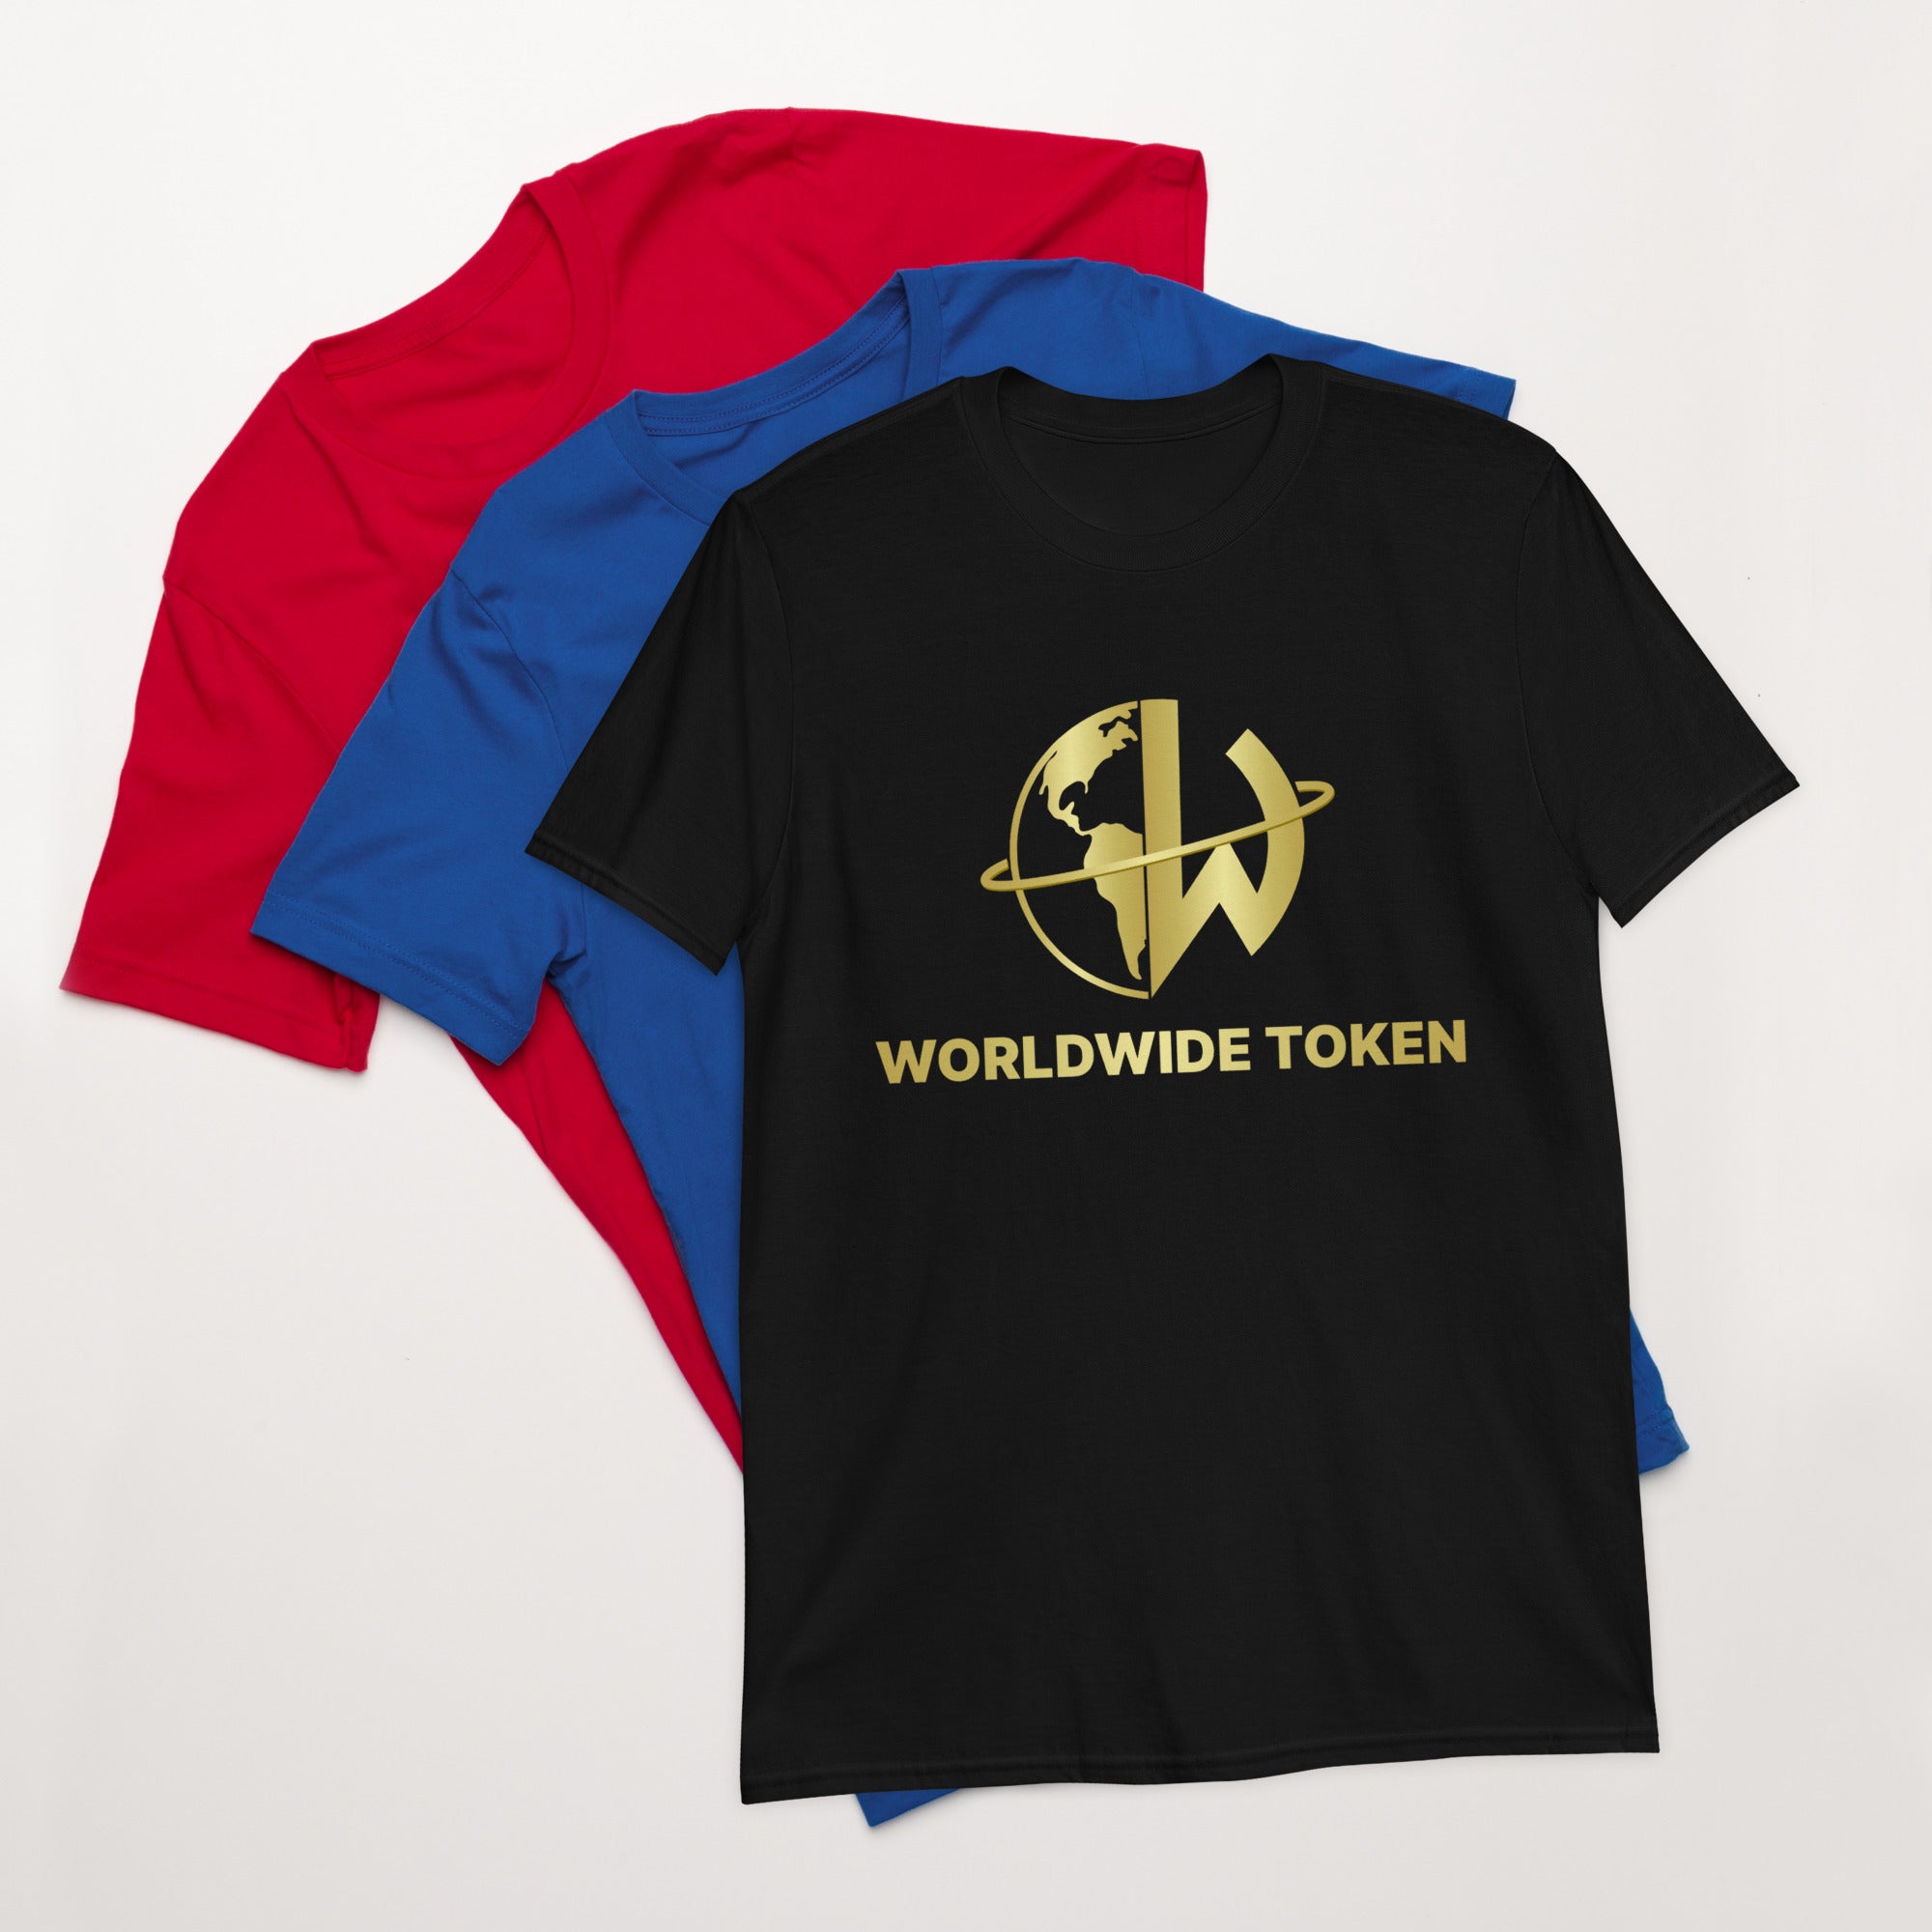 The Worldwide Token Short-Sleeve Unisex T-Shirt